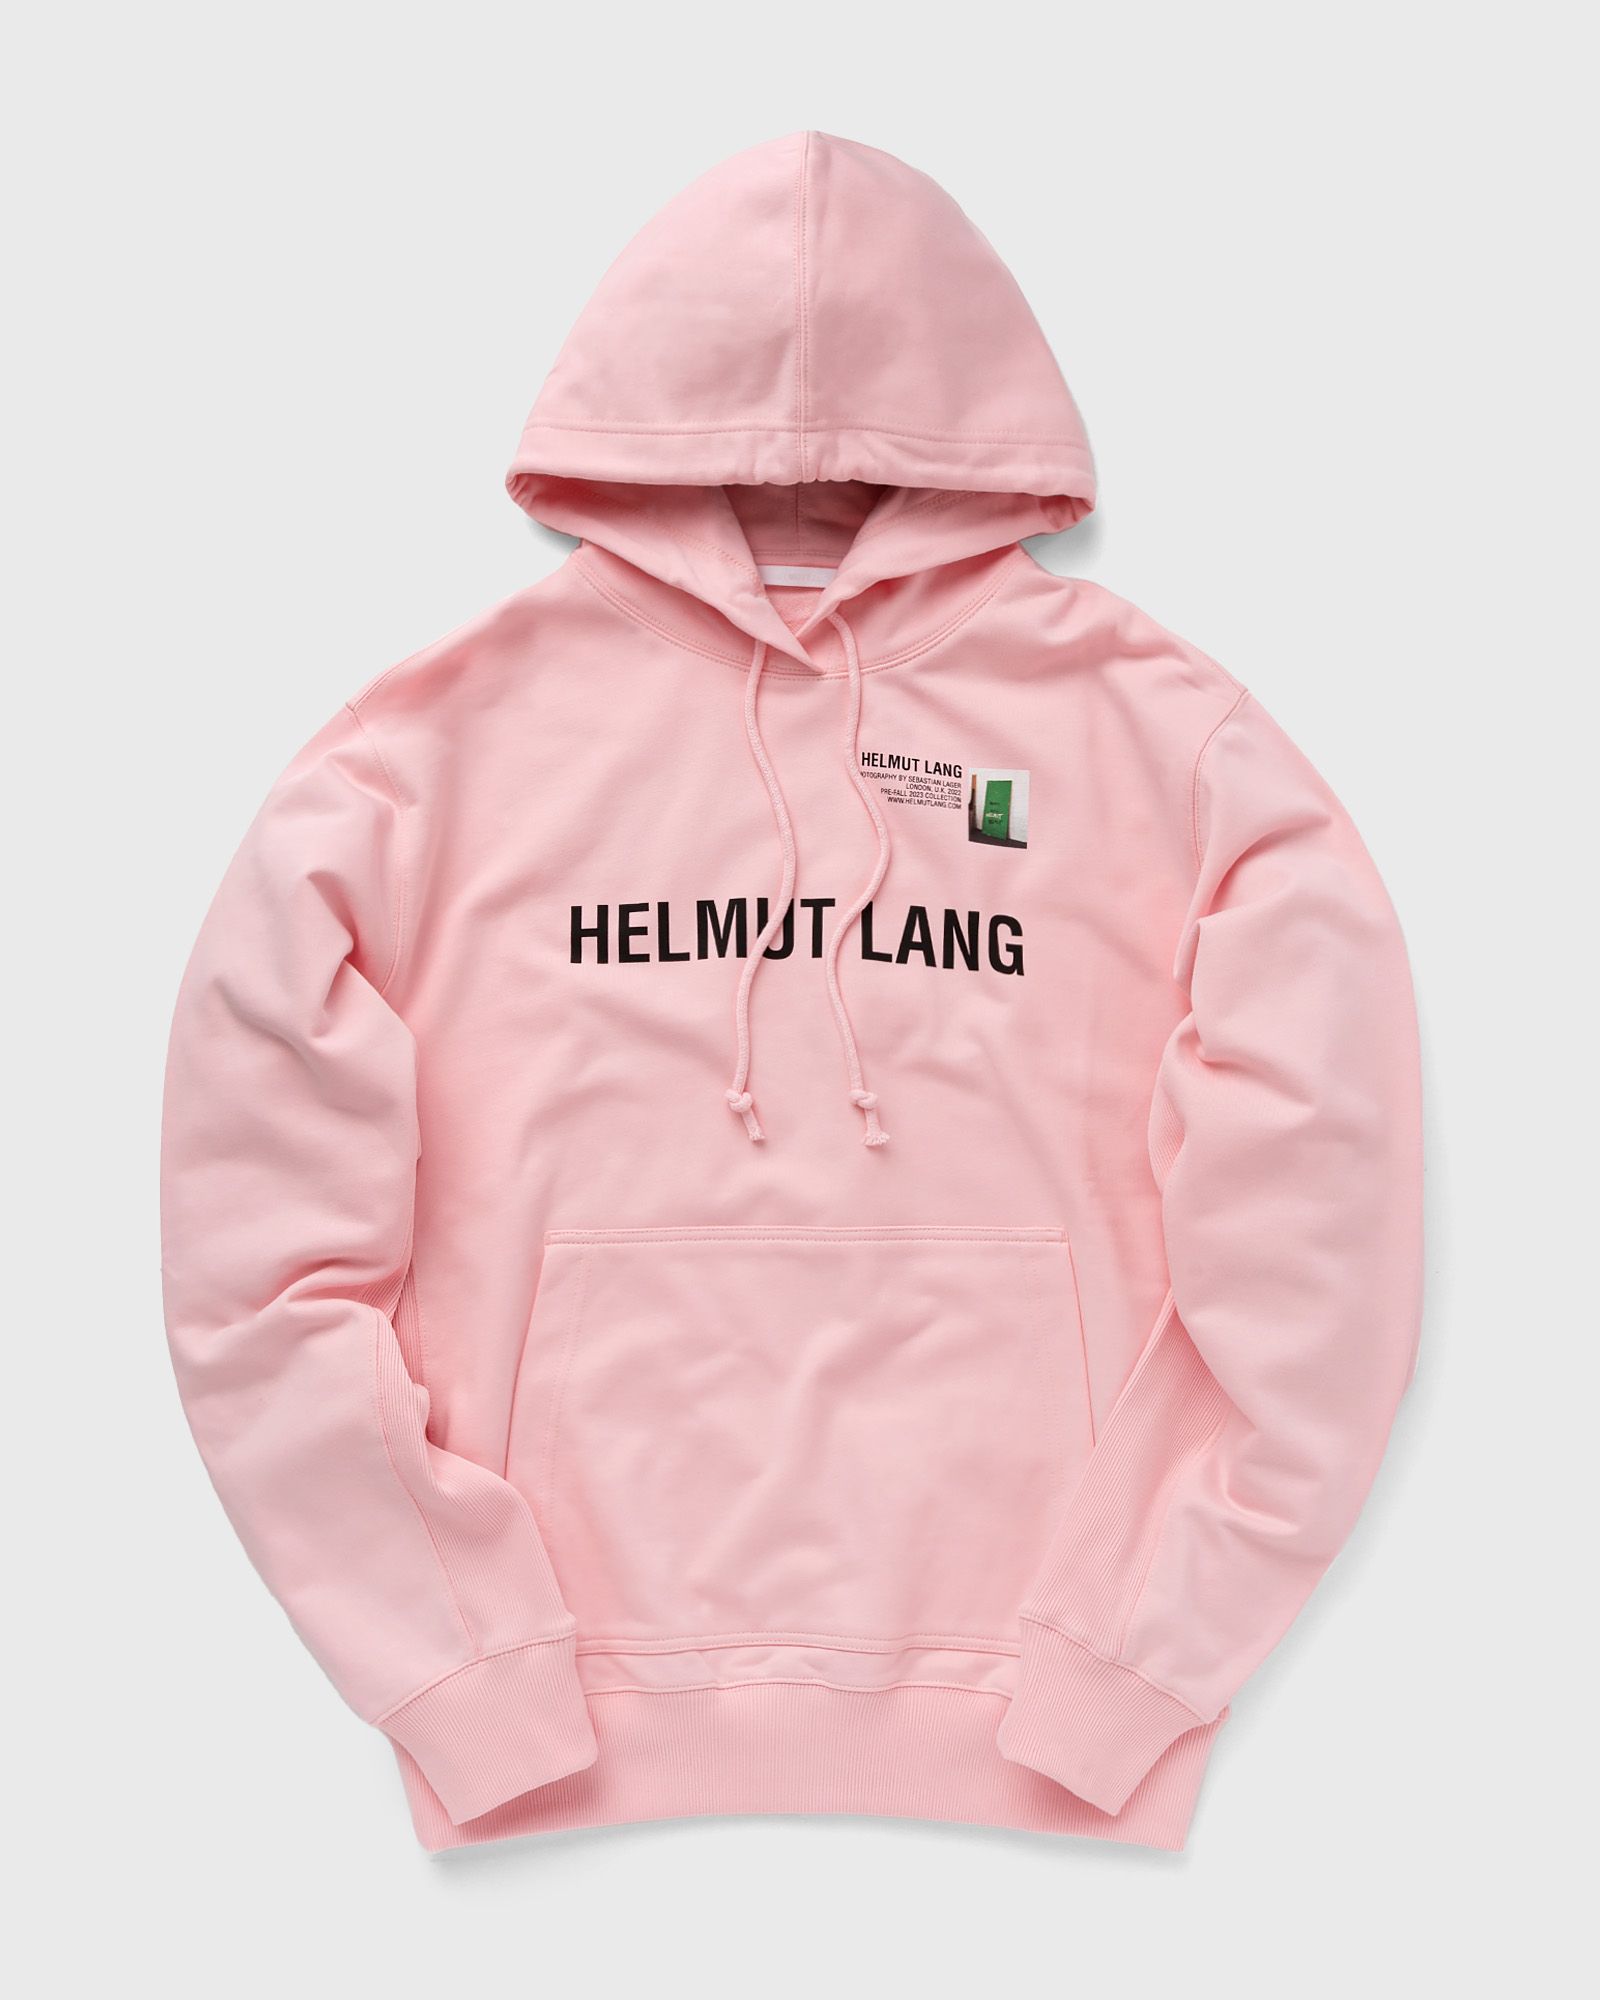 Helmut Lang - photo hoodie 4.photo men hoodies pink in größe:m